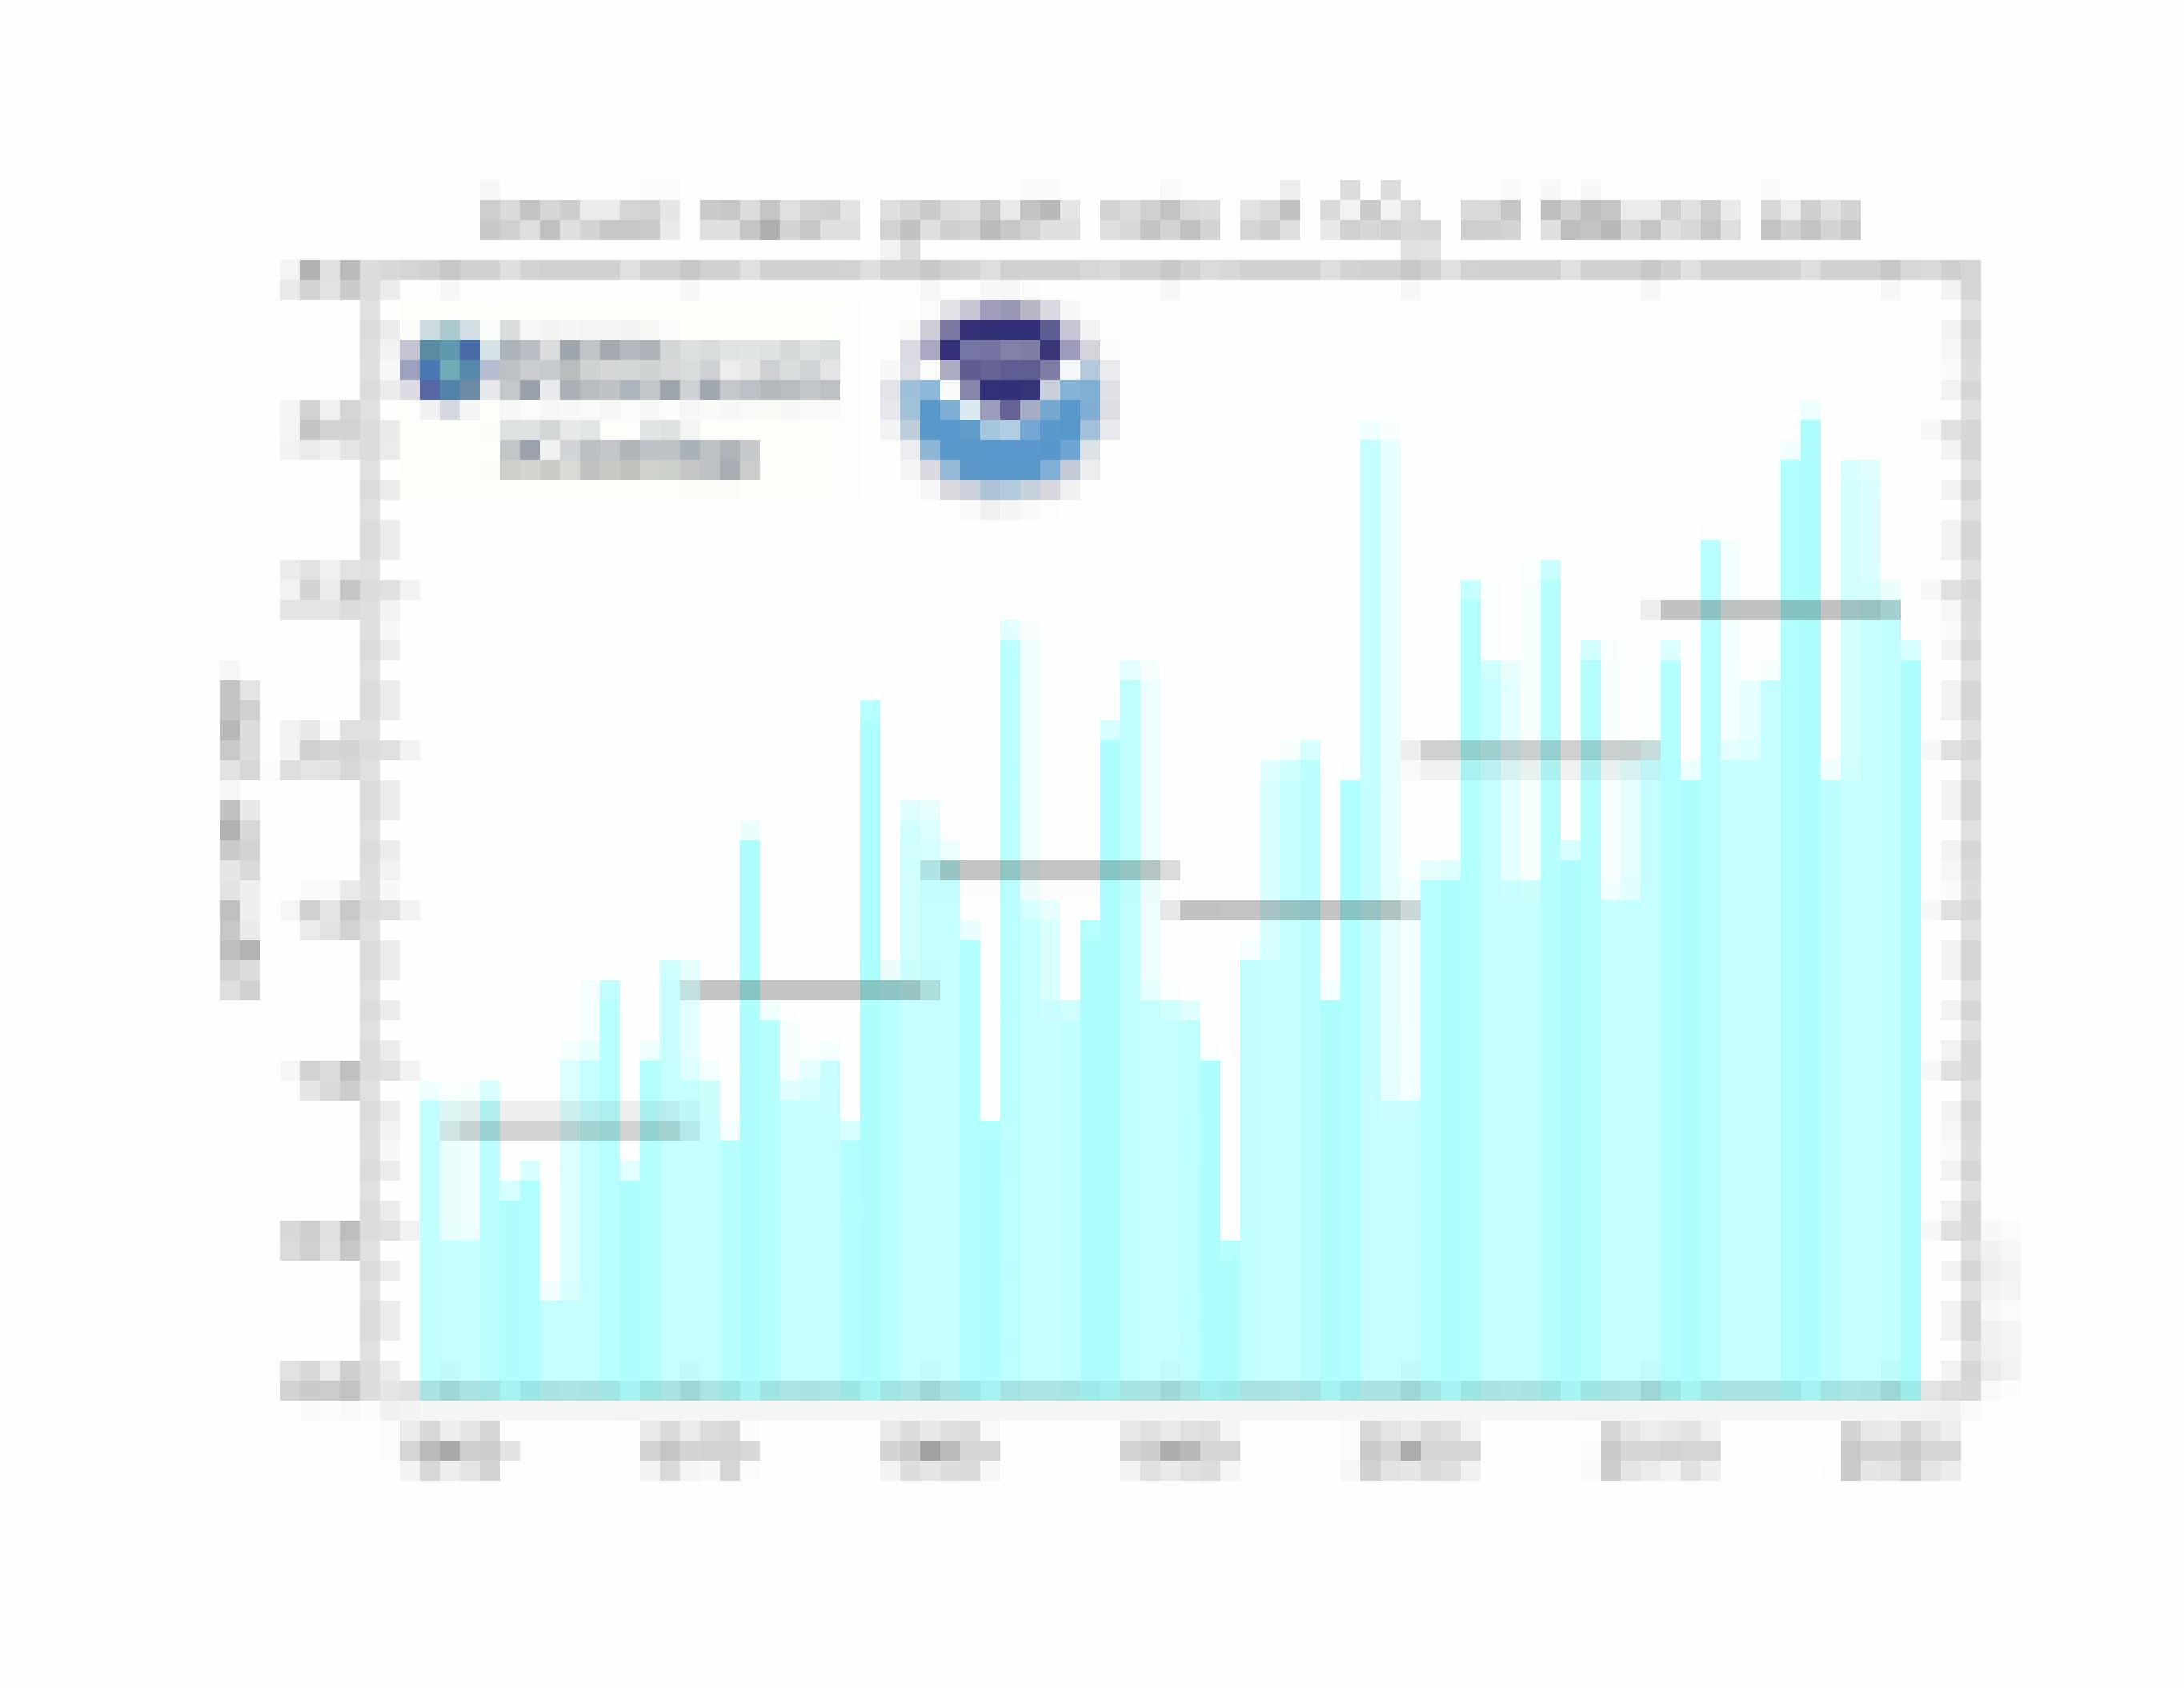 Die Graphik zeigt die jährliche Wachstumsrate der CO2-Konzentration nach Jahrzehnten. Sie ist von knapp unter 1 ppm im Durchschnitt der 1960er Jahre stetig auf heute 2.5 ppm jährlich gestiegen.